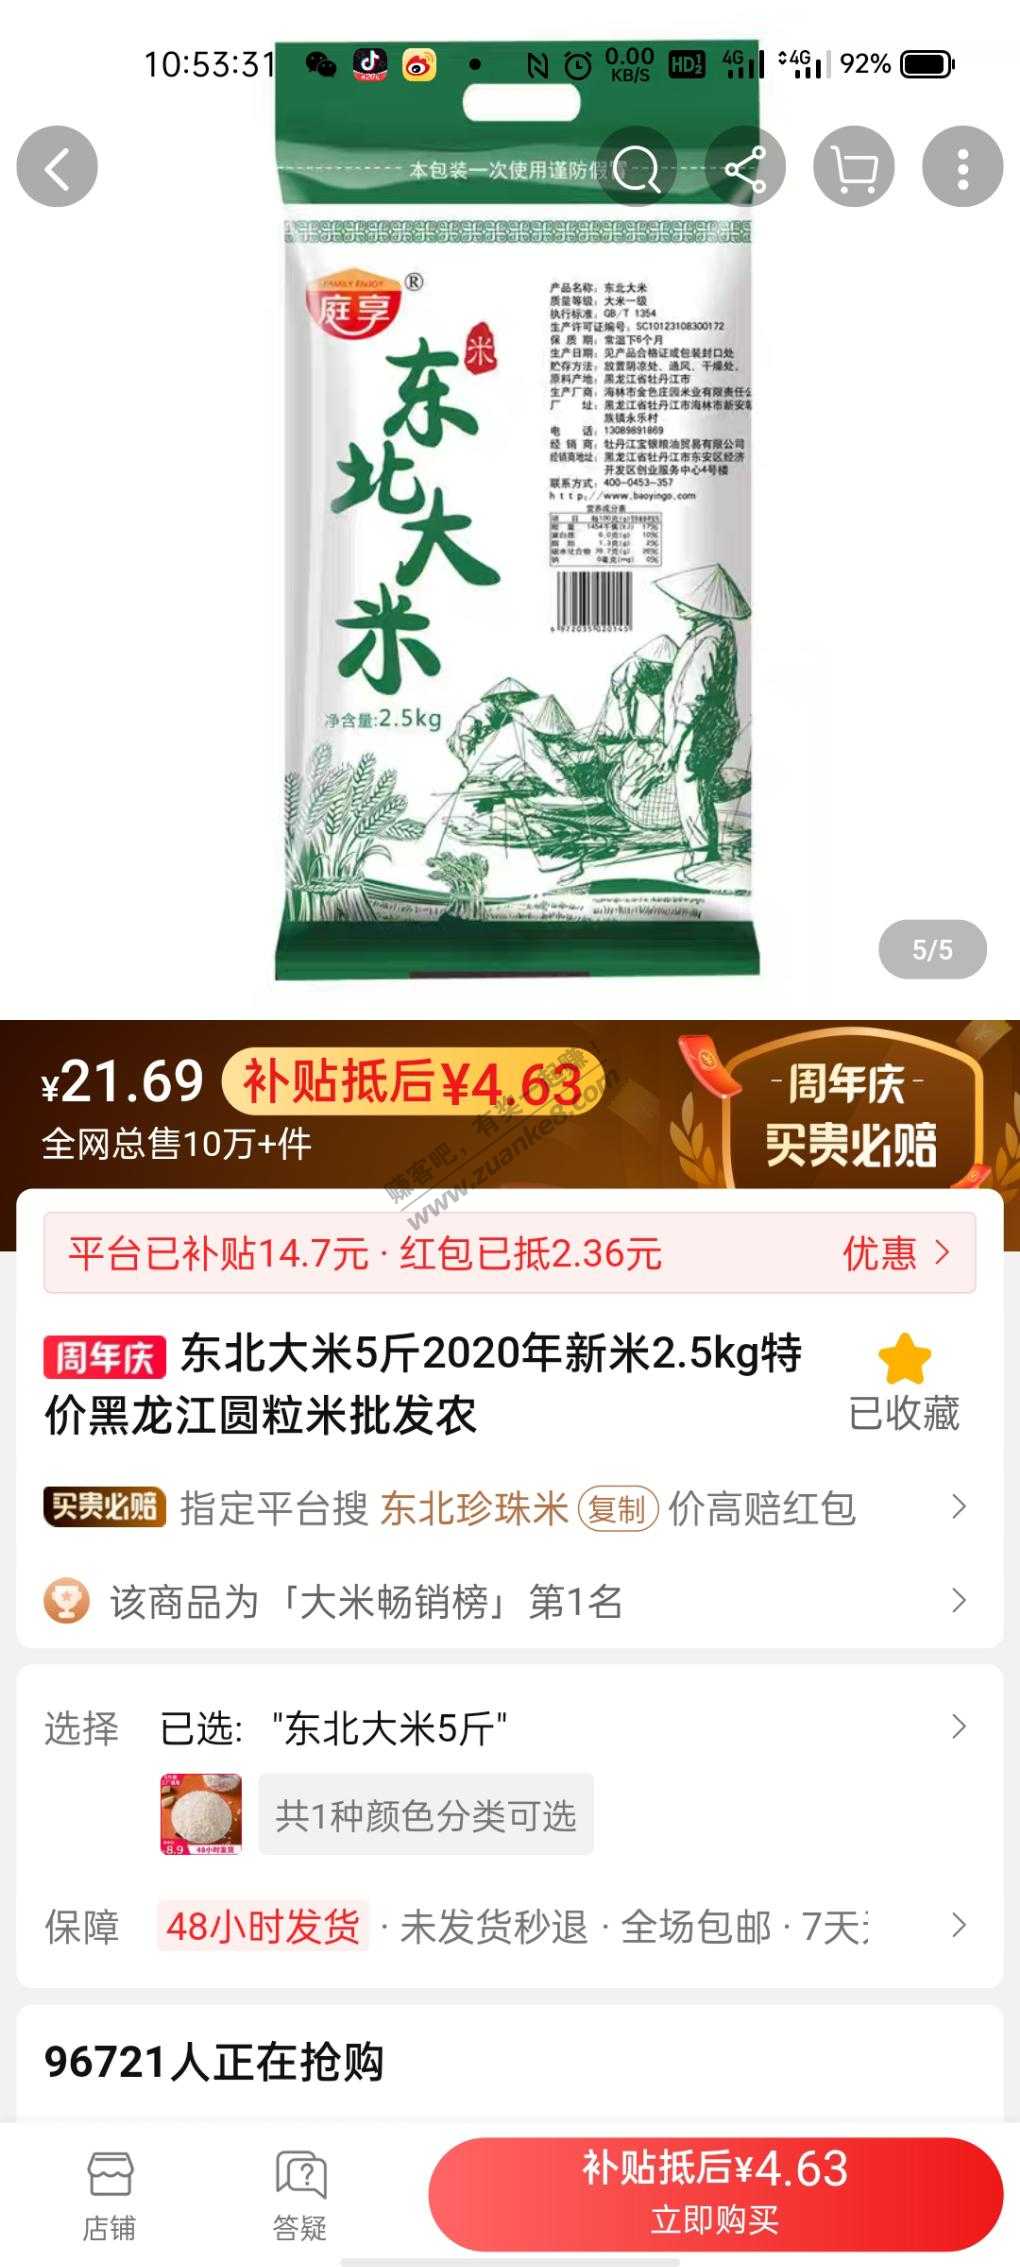 特价版4块五斤大米-惠小助(52huixz.com)